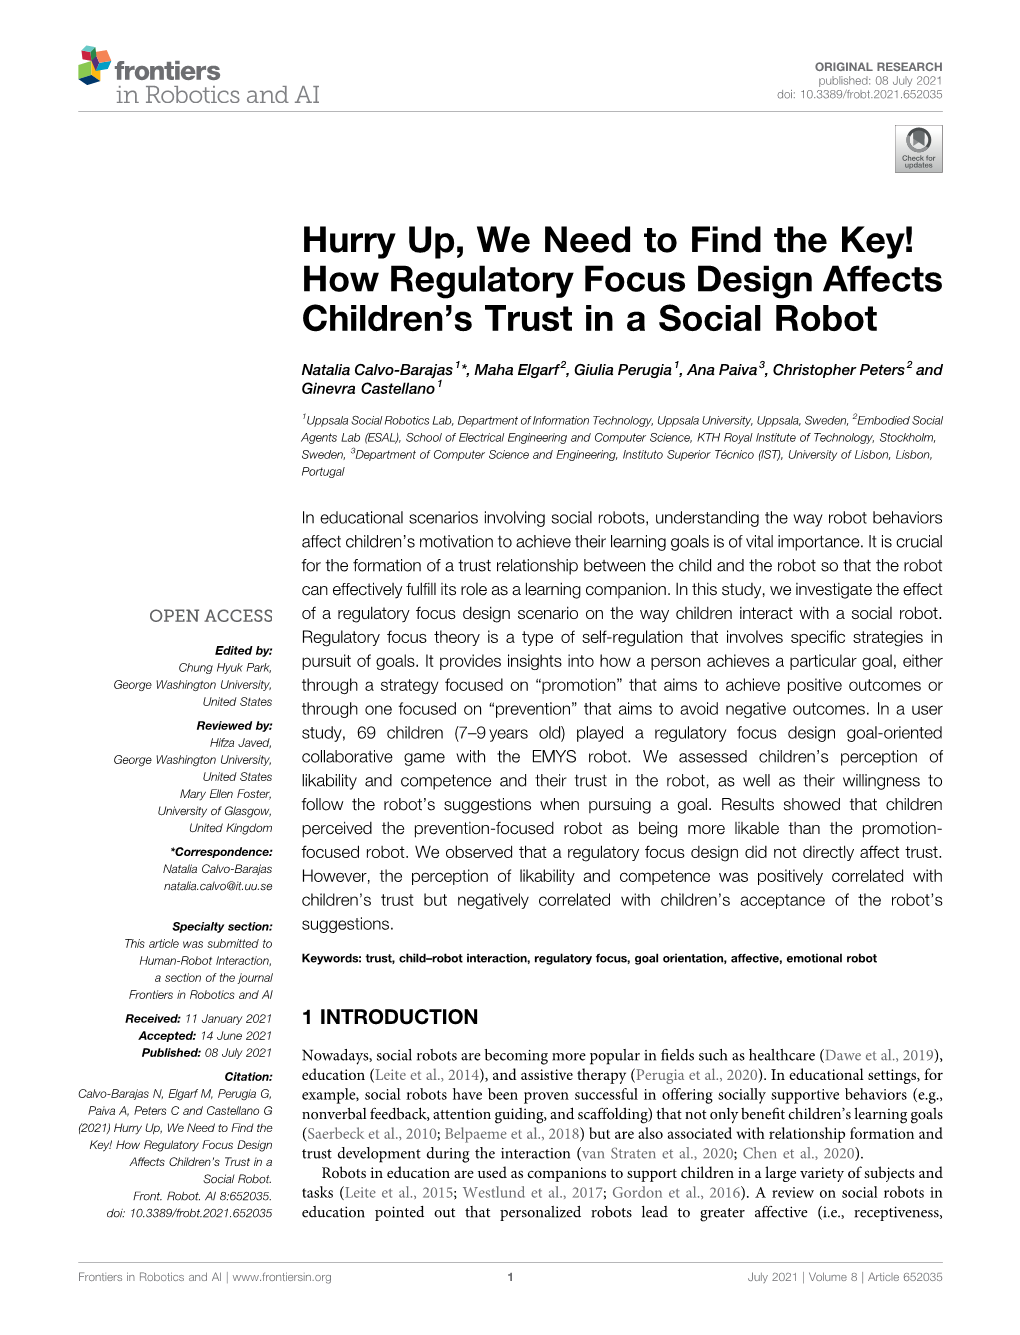 How Regulatory Focus Design Affects Children's Trust in a Social Robot